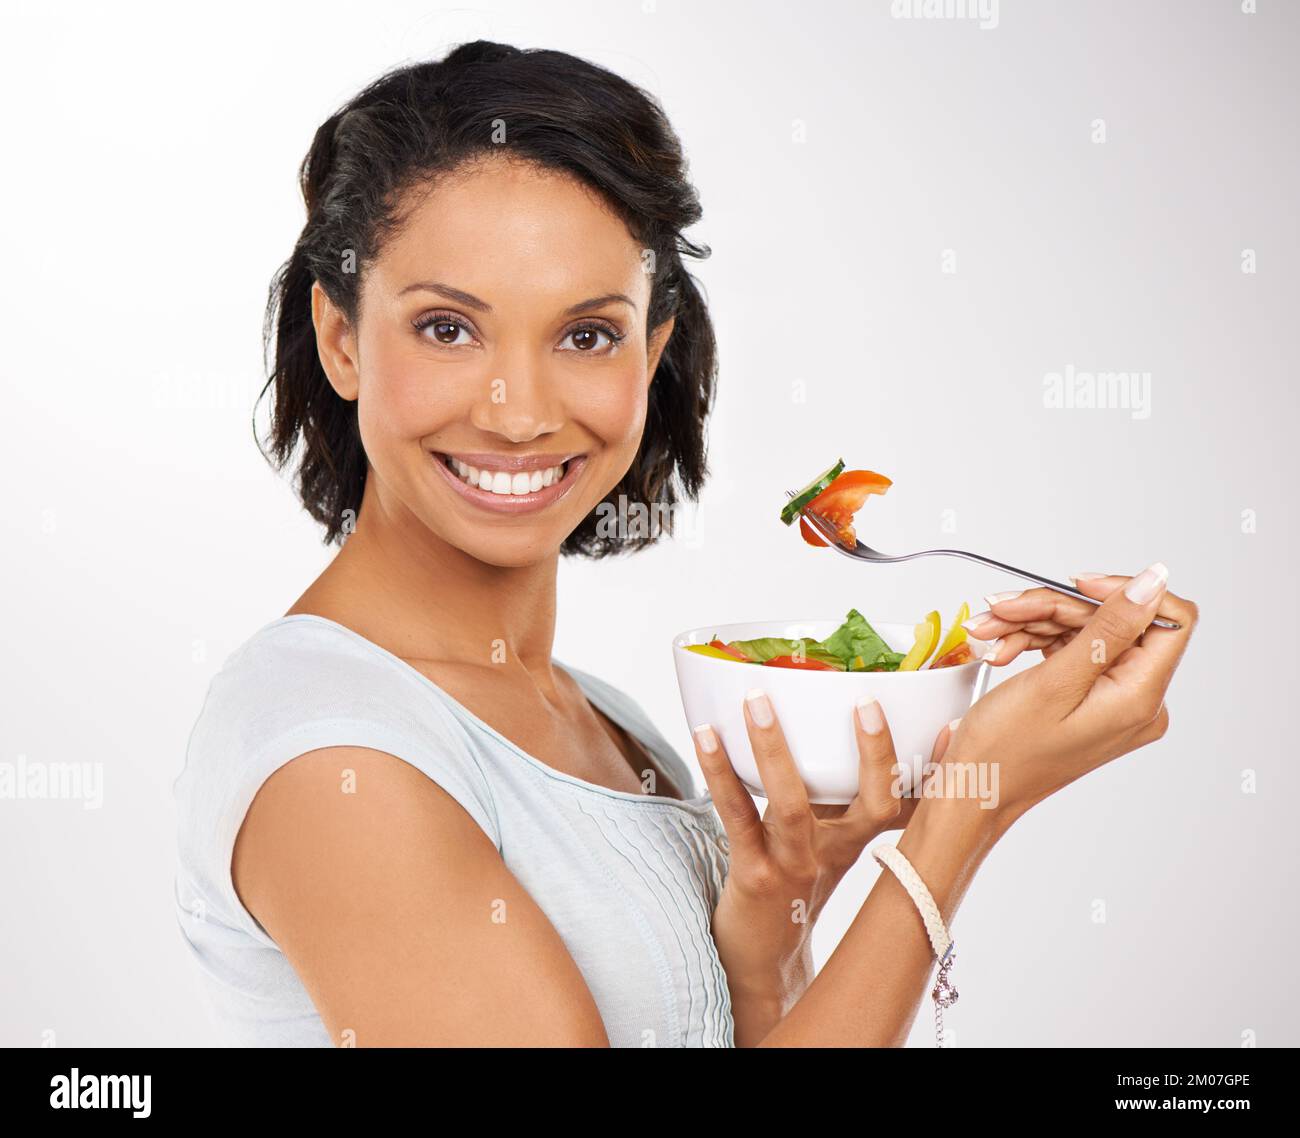 Faites un petit morceau hors de la nature. Portrait d'une jeune femme en train de savourer une salade. Banque D'Images